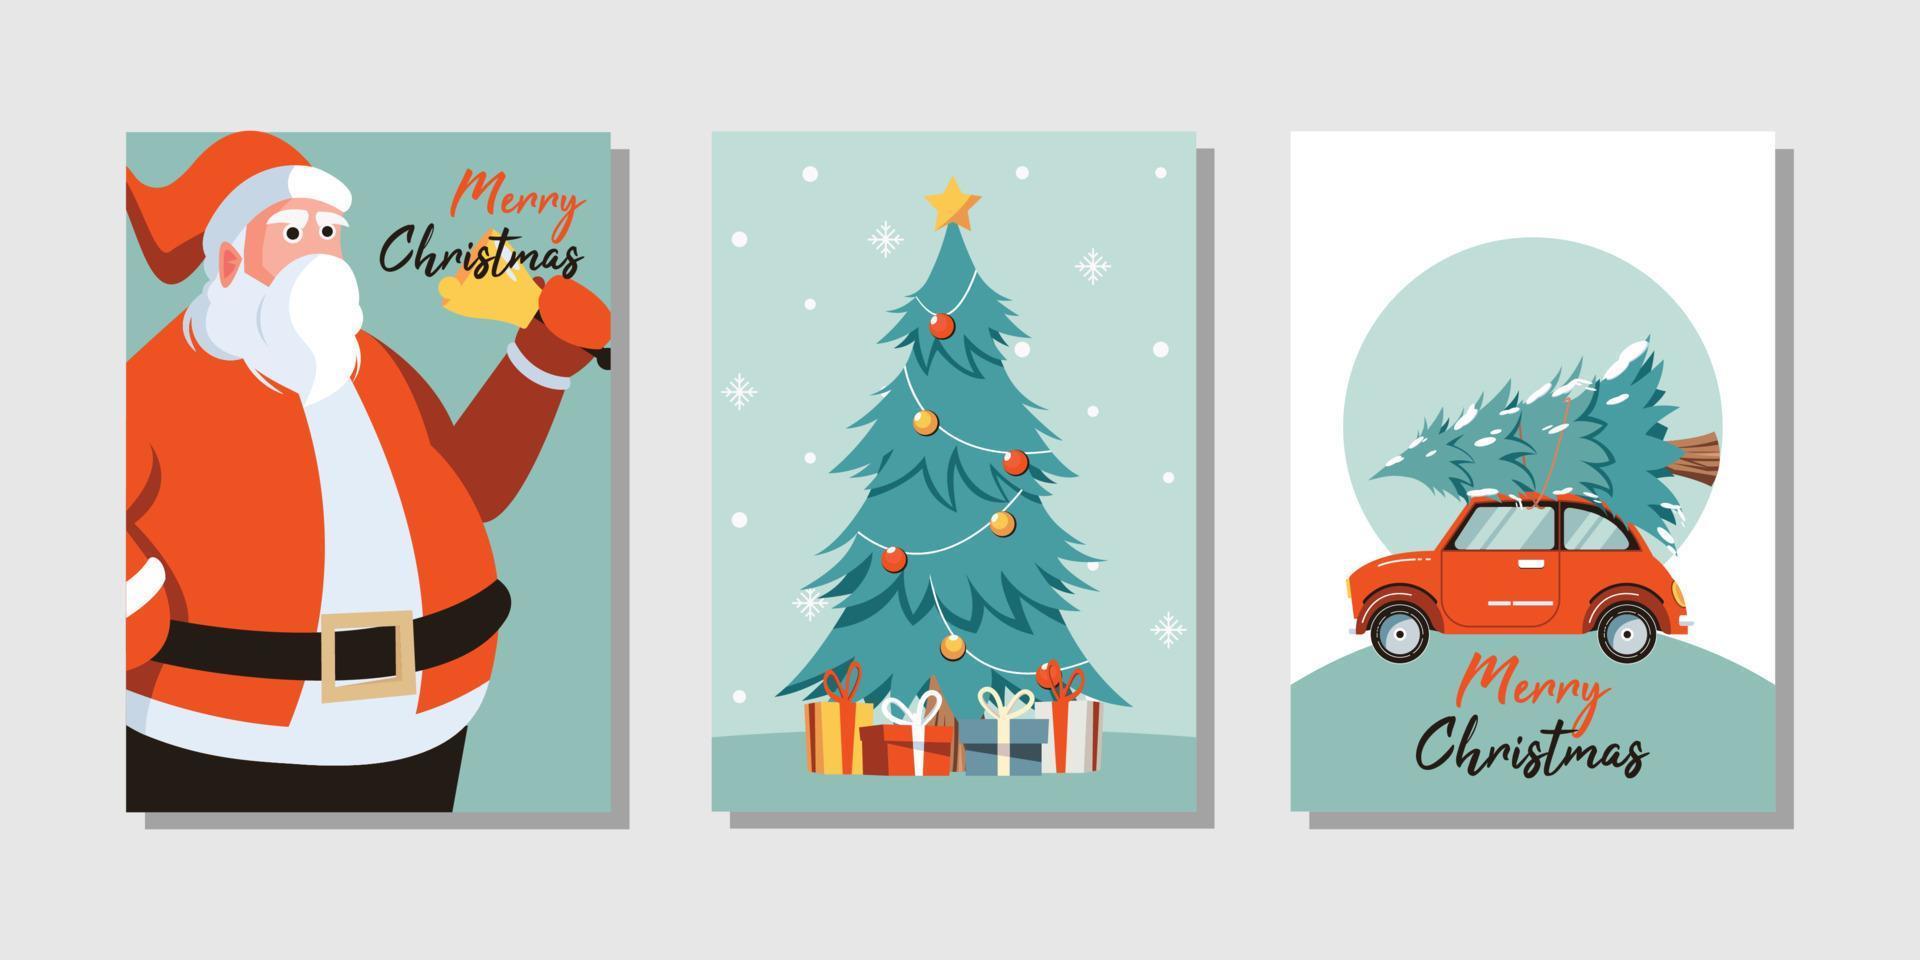 tarjeta de felicitación de feliz navidad con lindos diseños de árbol de navidad, santa y auto vector